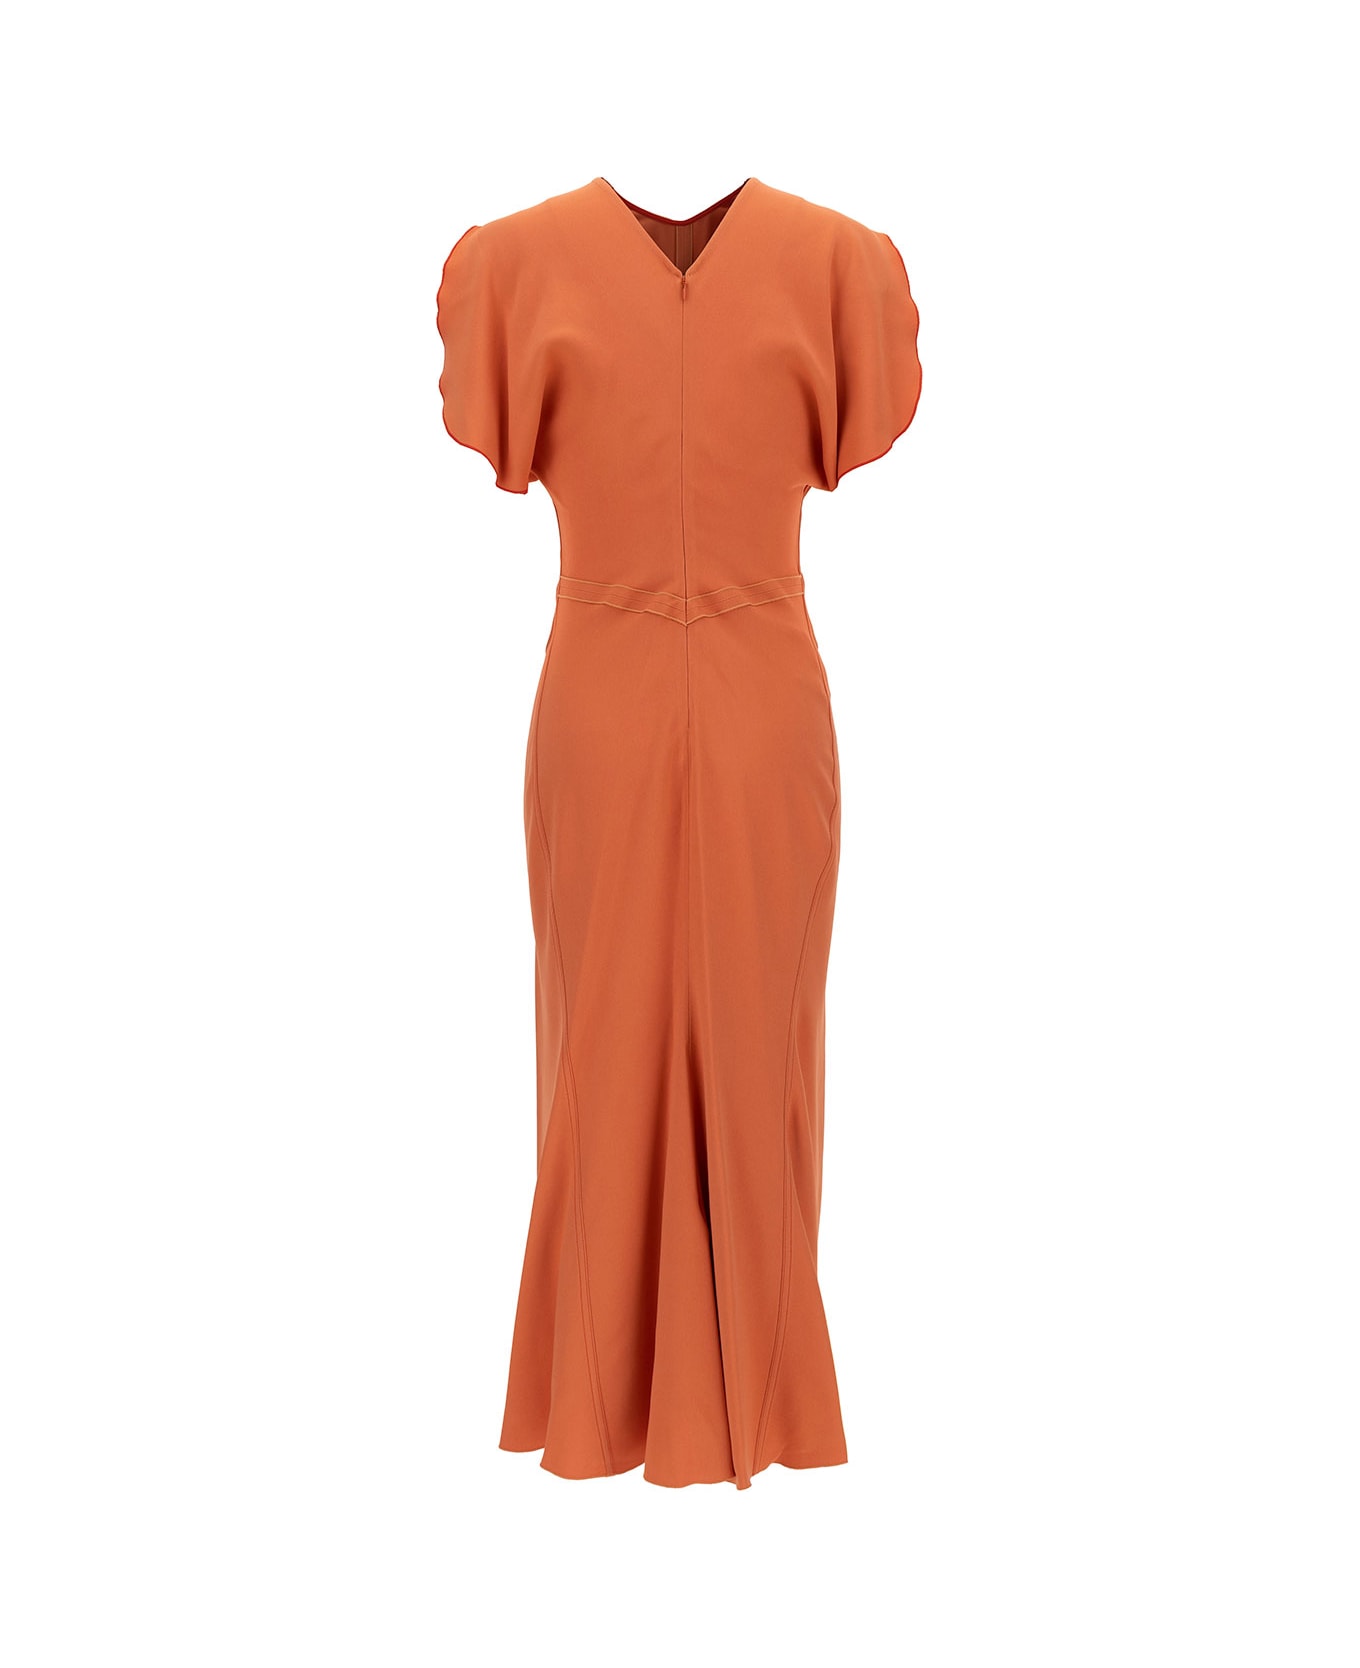 Victoria Beckham Midi Orange Dress With Gathered Waist In Viscose Blend Woman - Orange